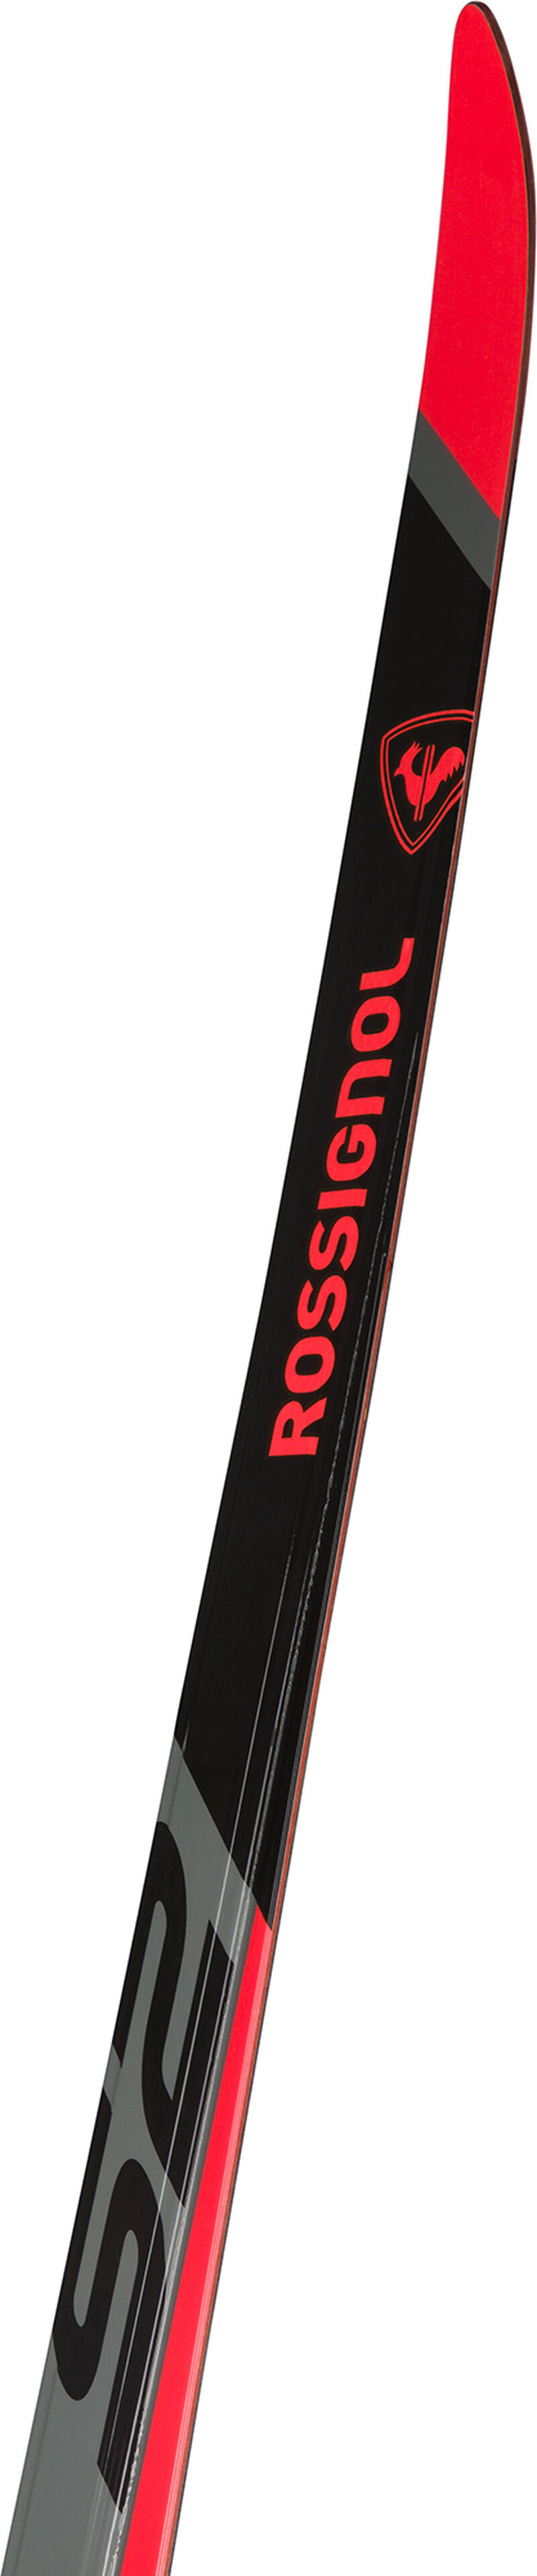 Rossignol Unisex Nordic Racing Skis X-Ium Skating Wcs-S2 MEDIUM multicolor